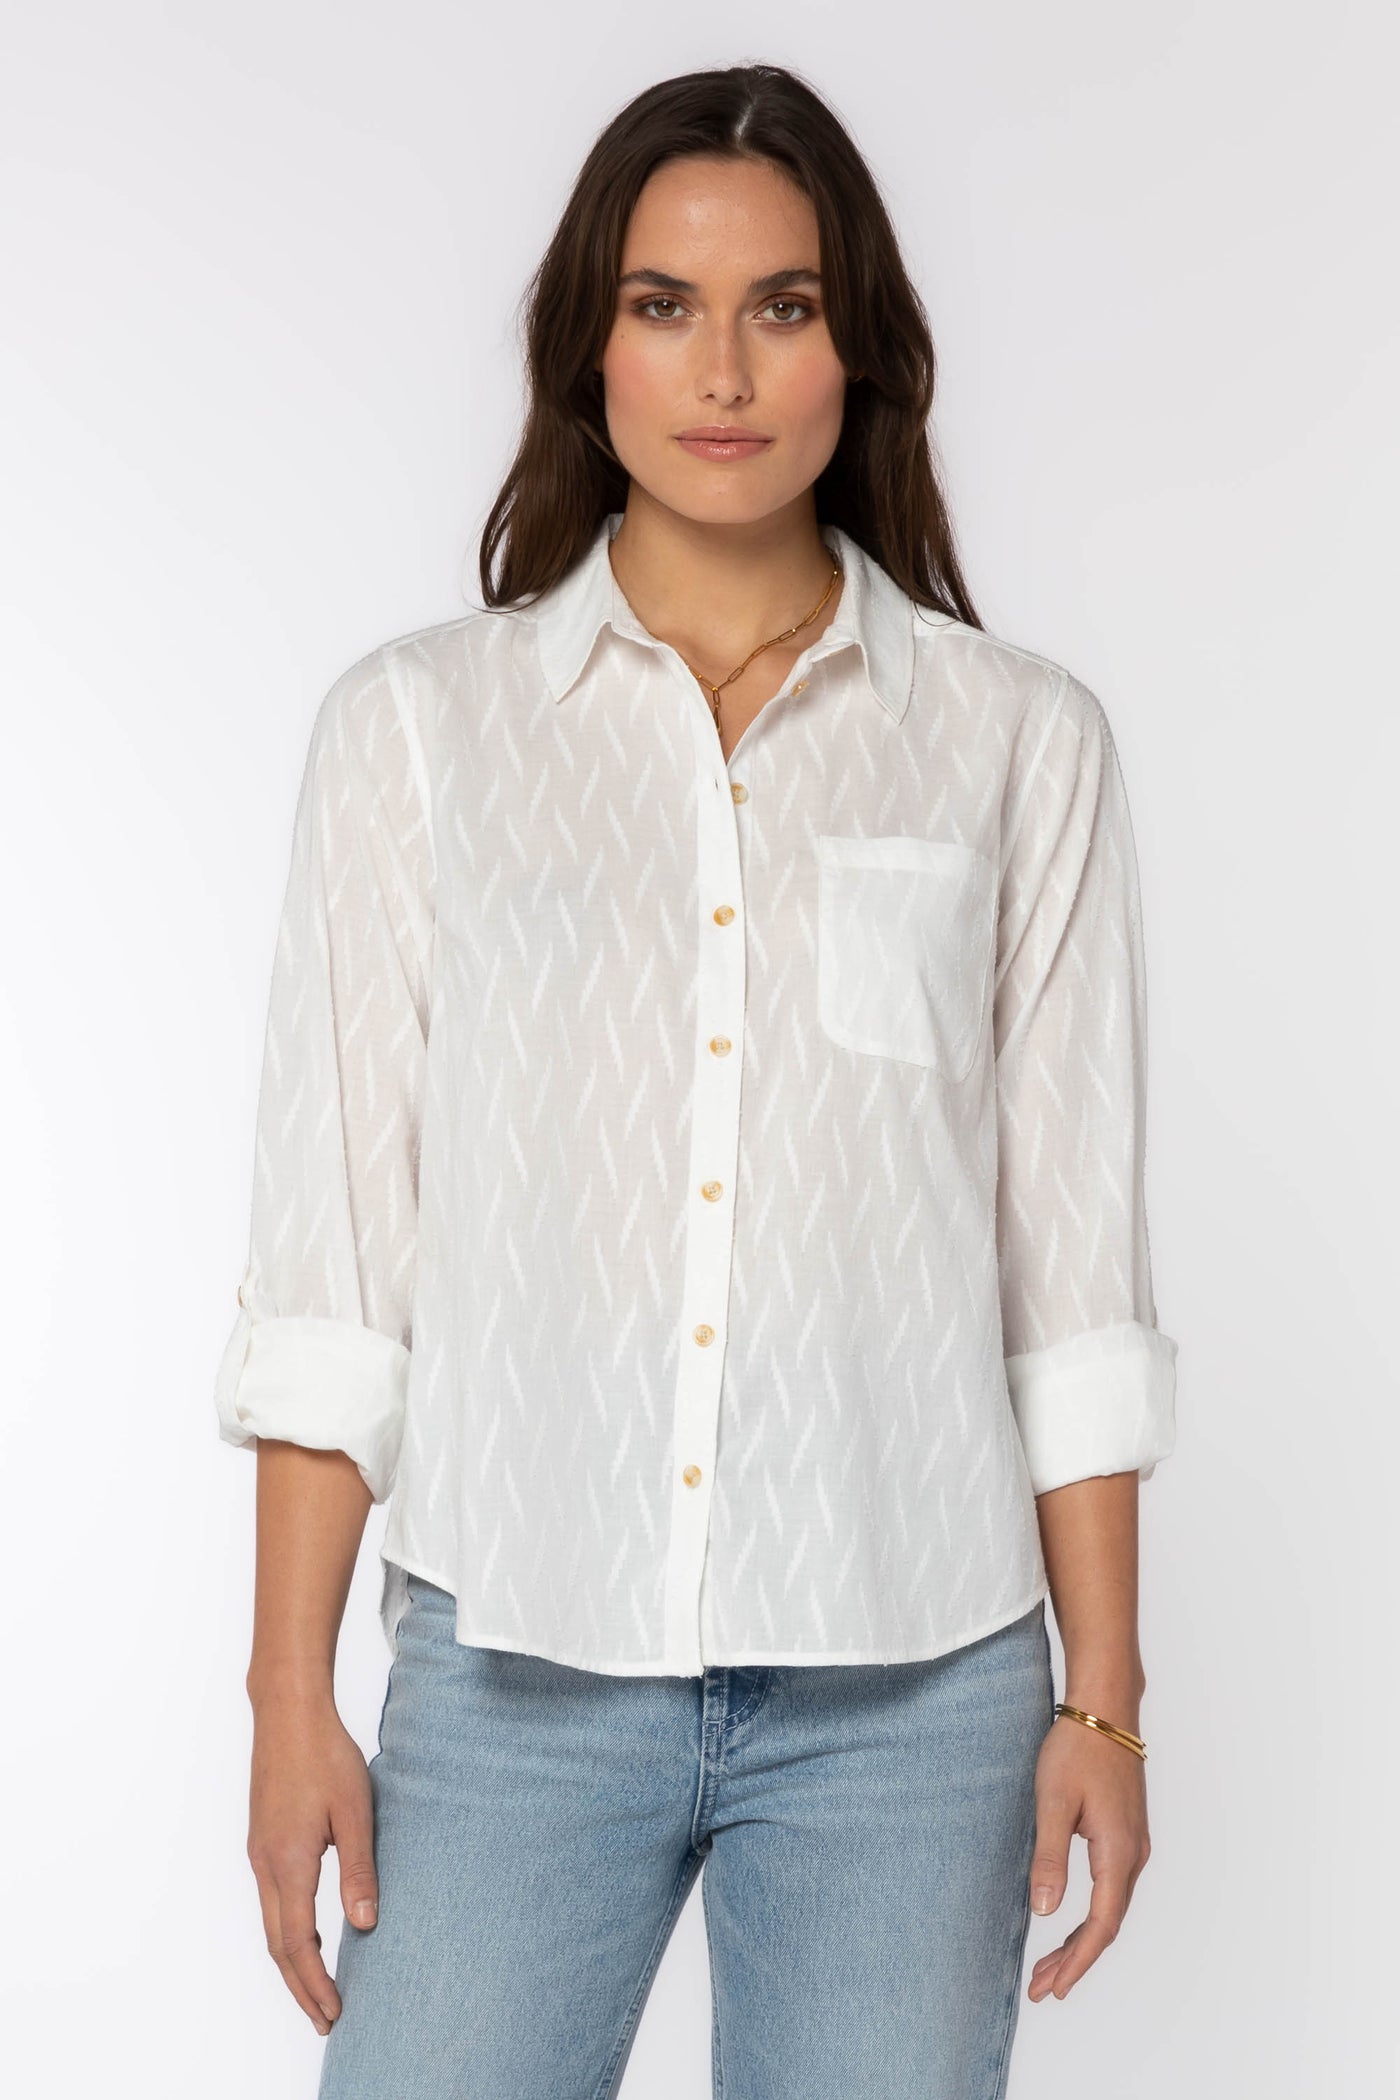 Bexley Shirt - Tops - Velvet Heart Clothing